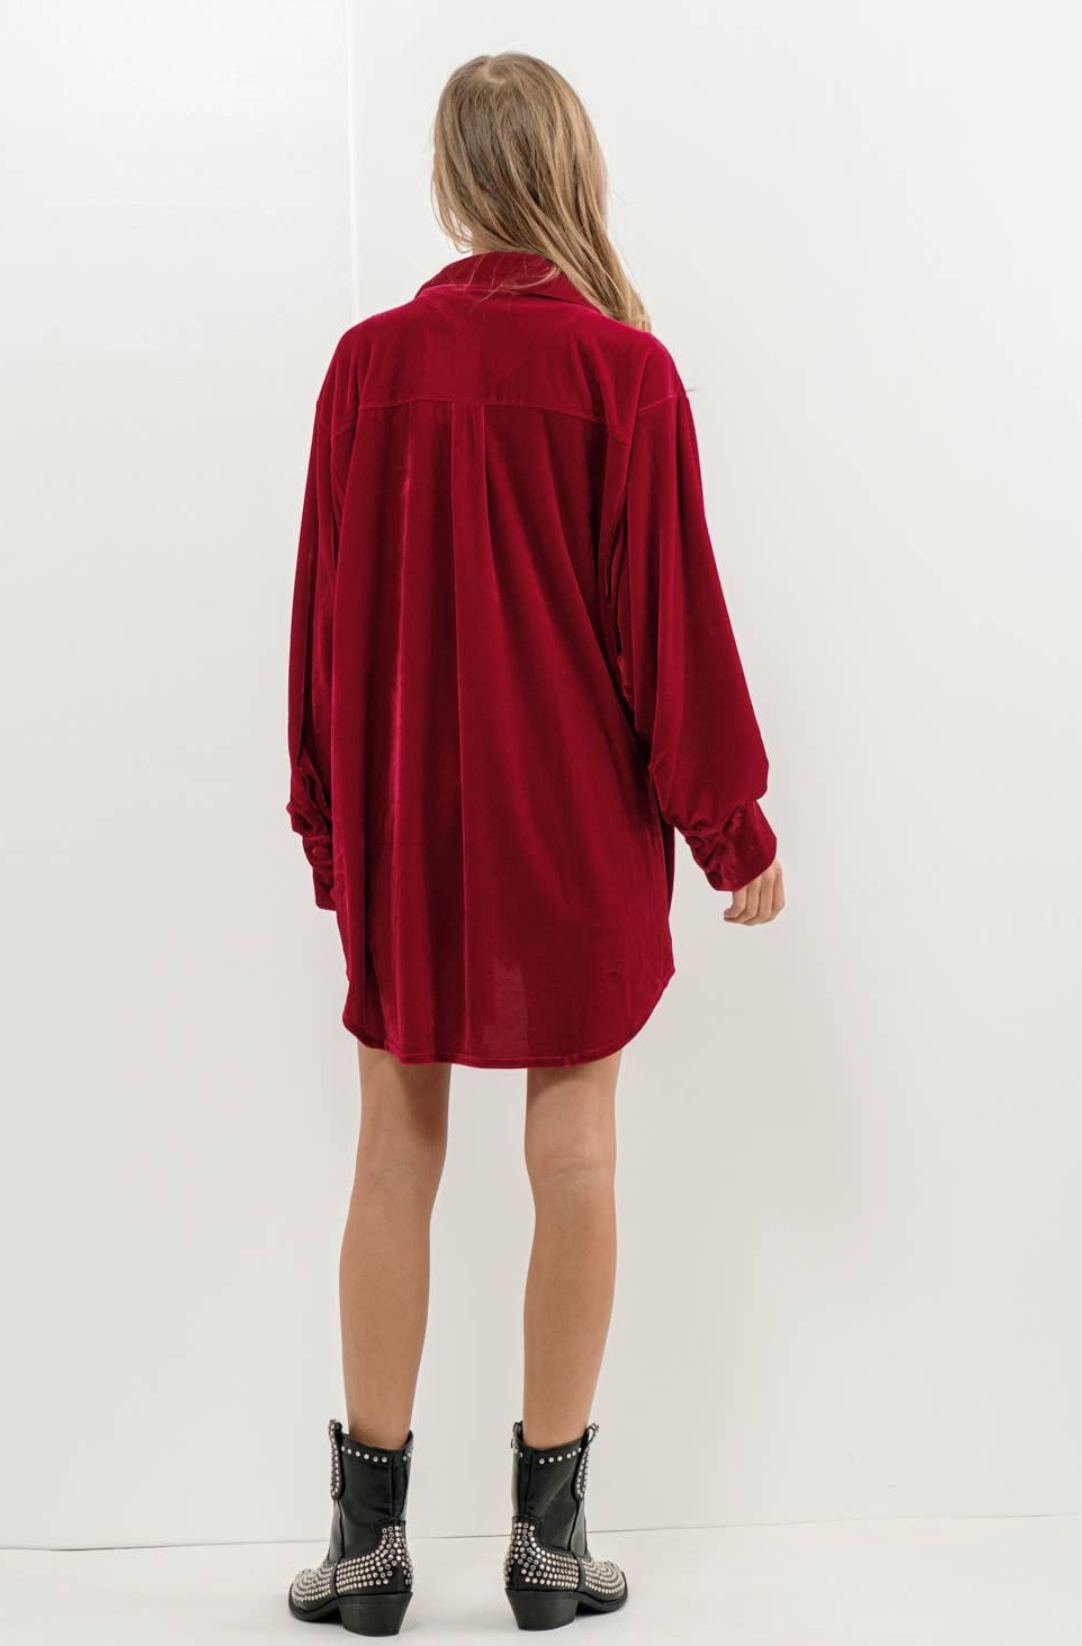 Red velvet buttonup dress shirt